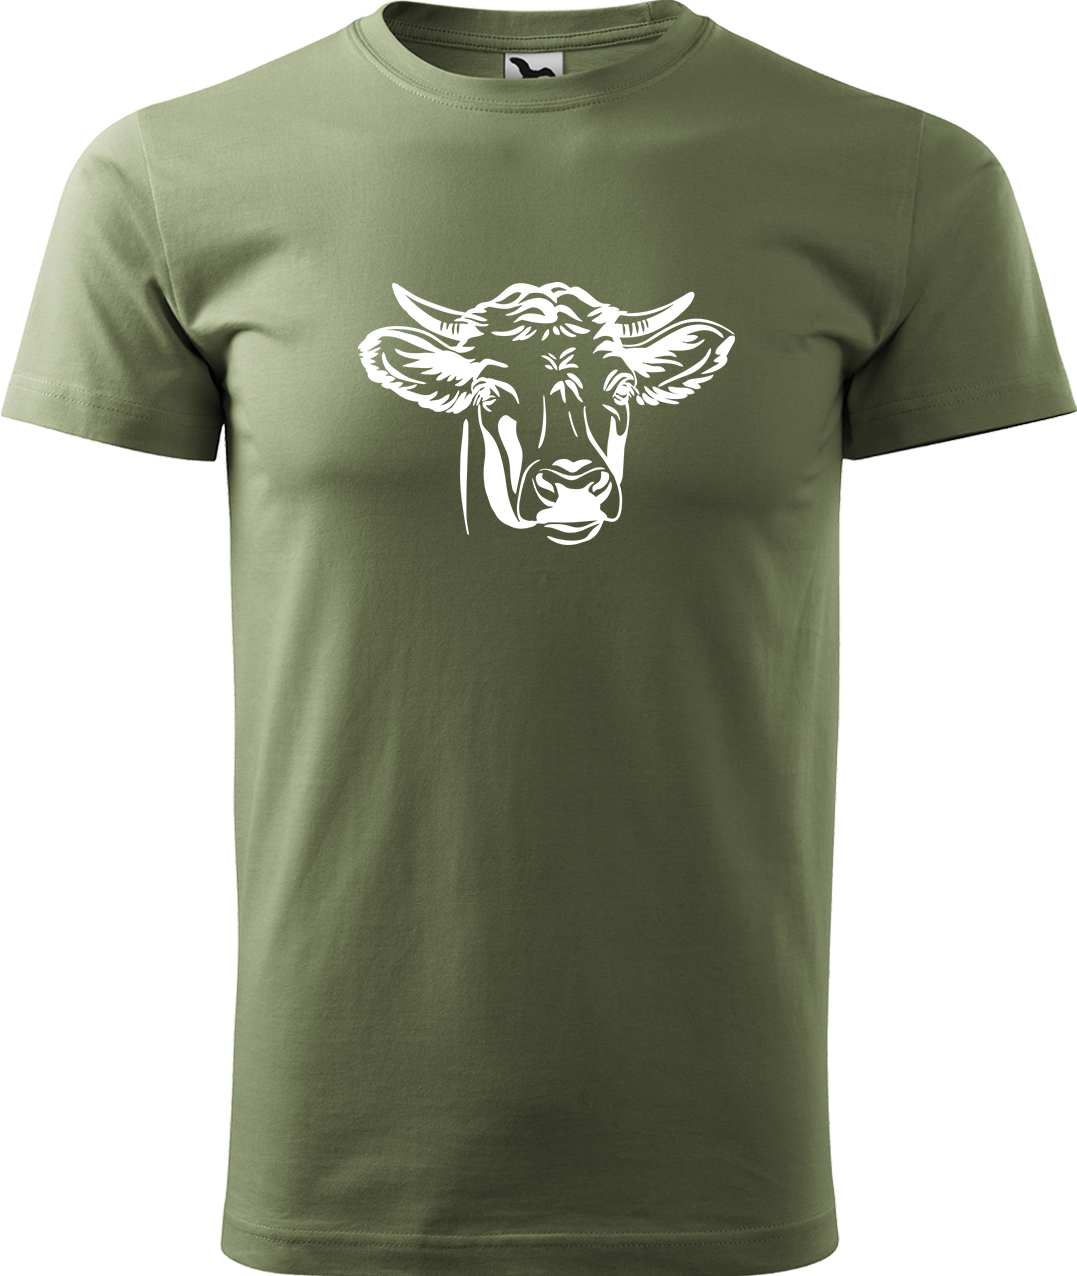 Pánské tričko s krávou - Hlava krávy Velikost: 4XL, Barva: Světlá khaki (28), Střih: pánský